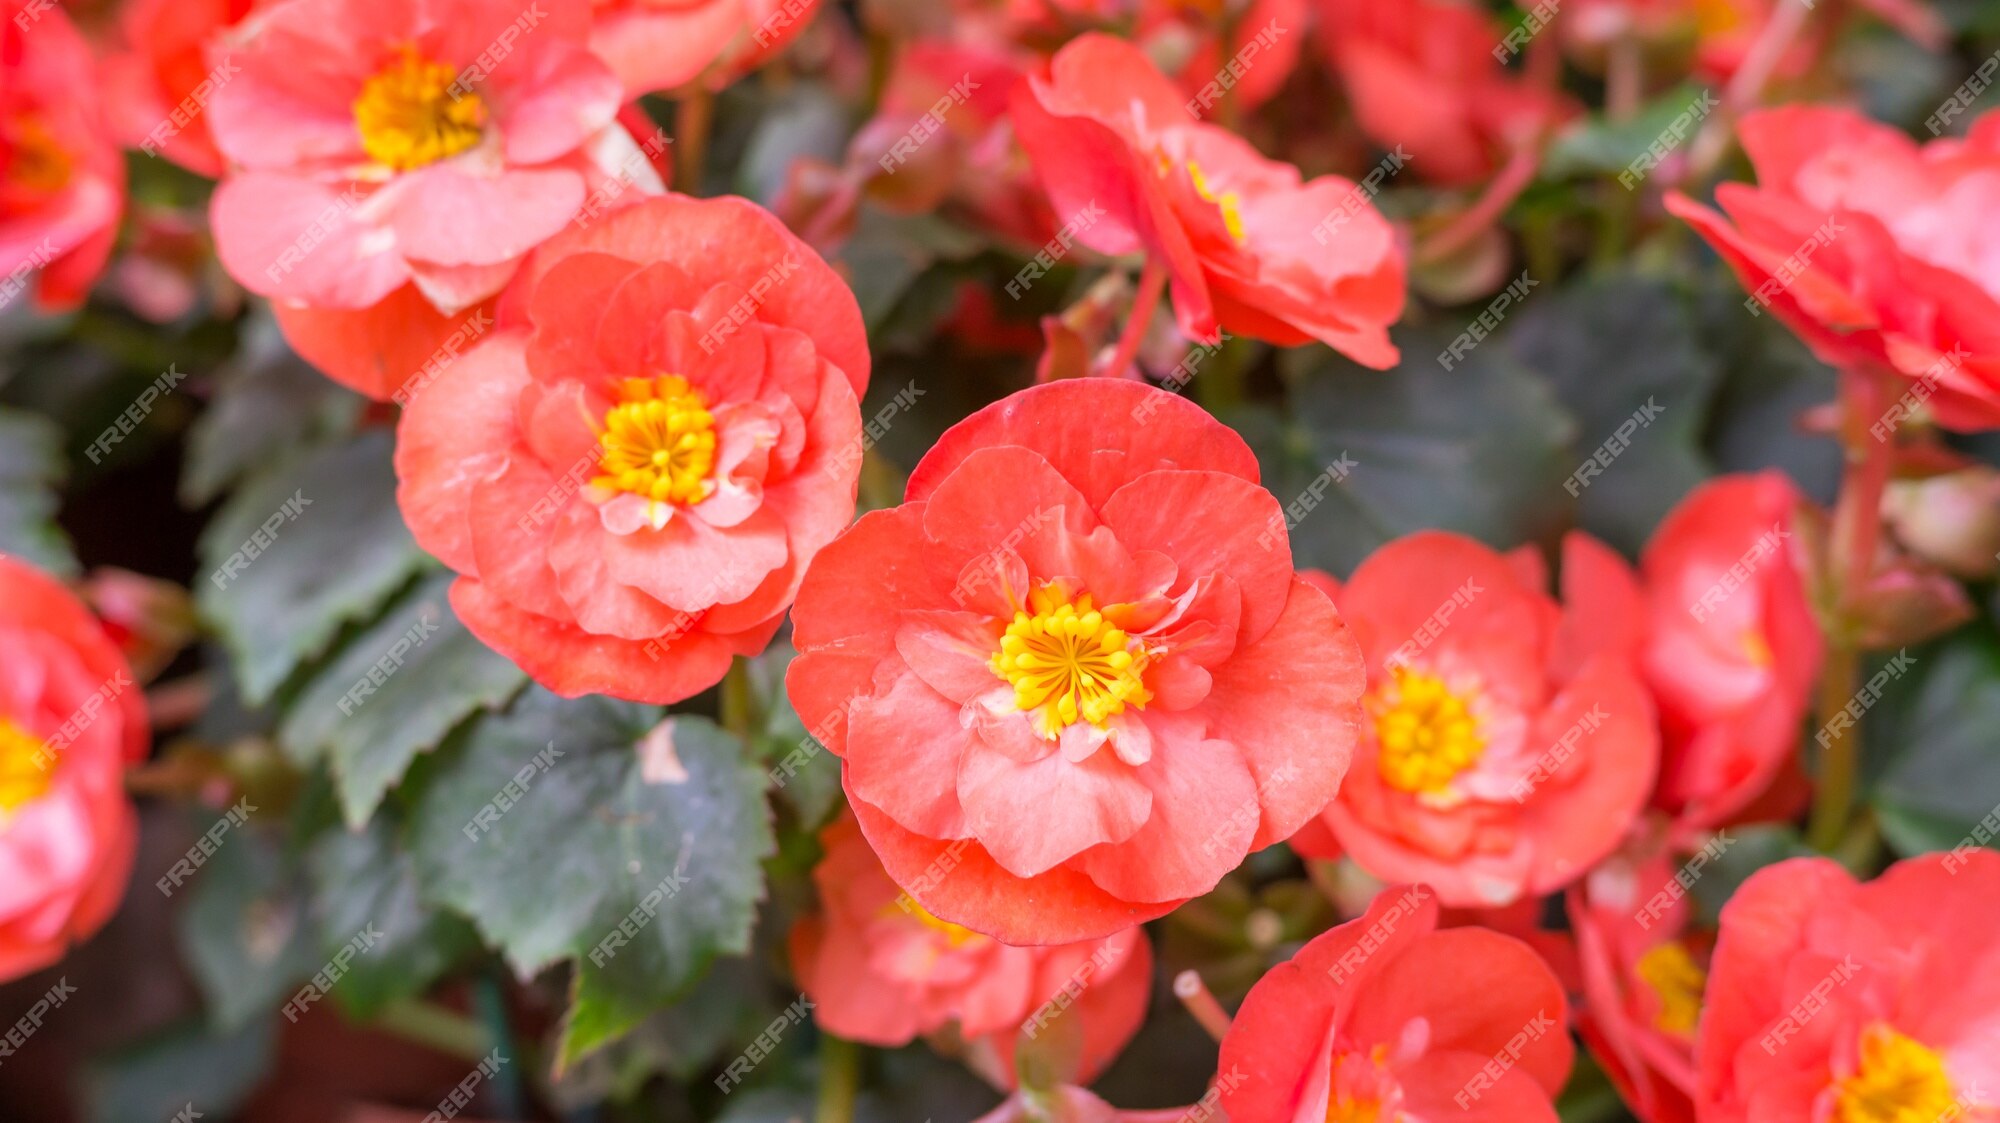 Flor roja de begonia en el jardín. | Foto Premium